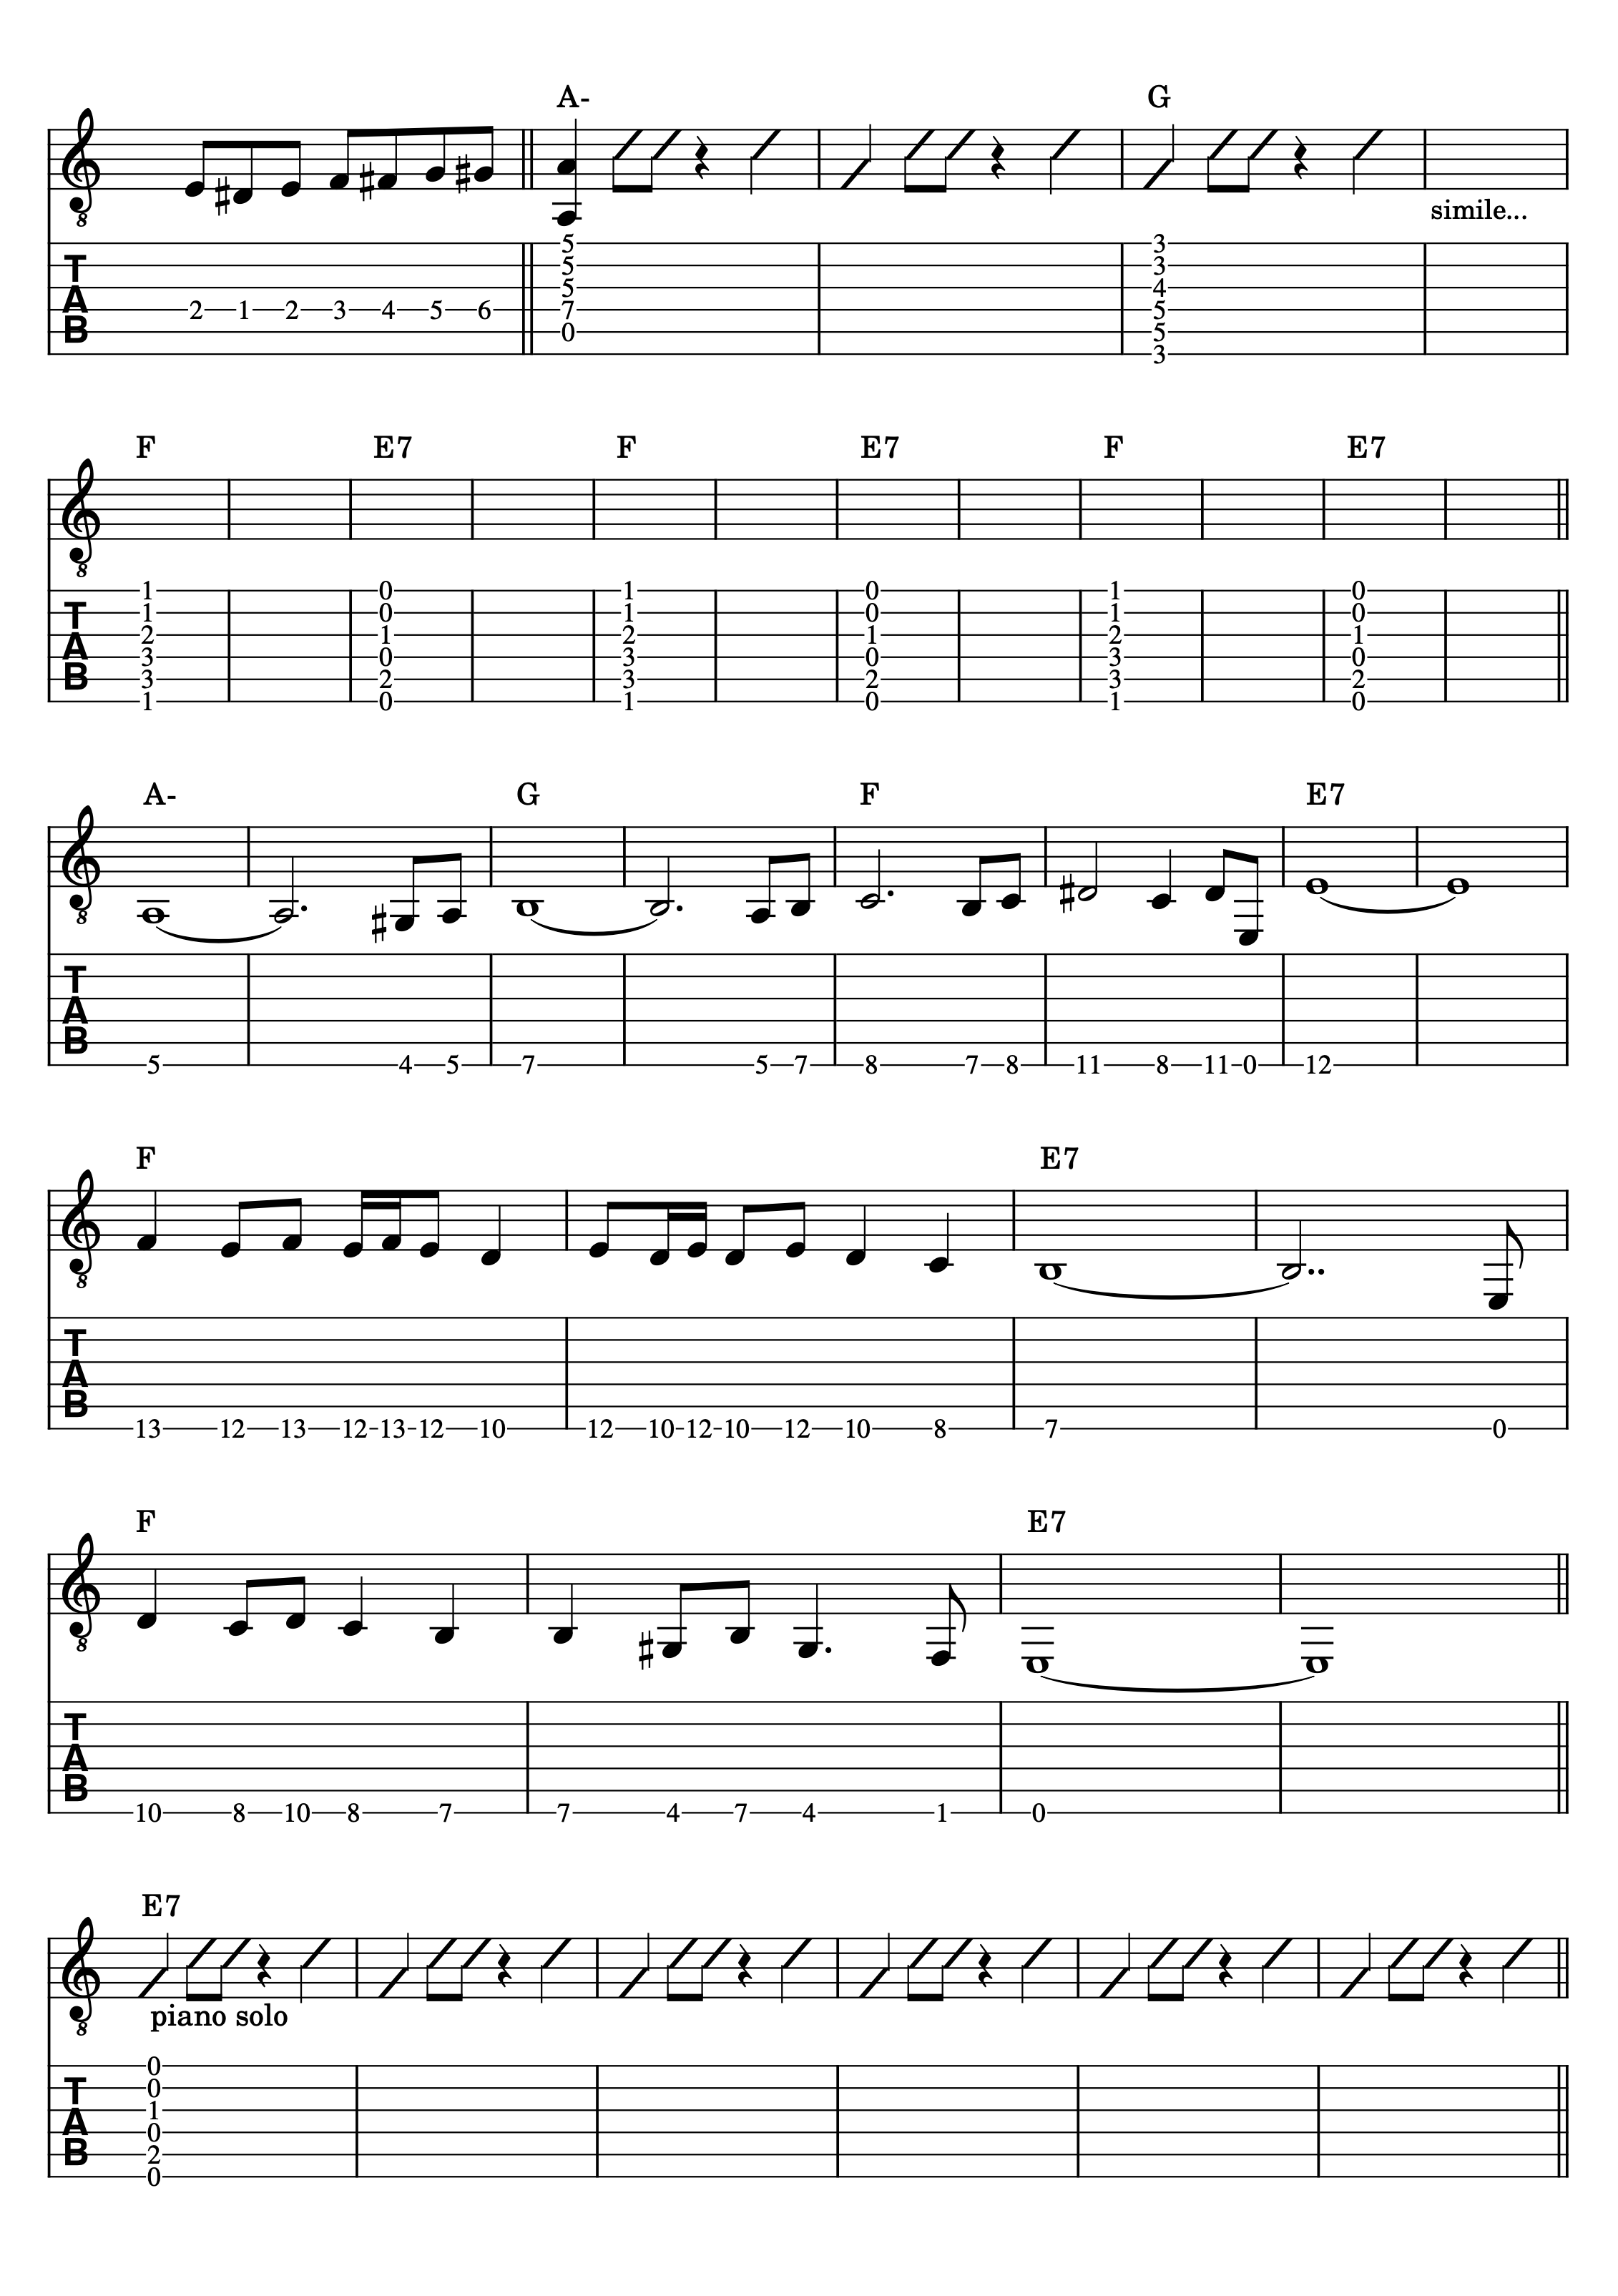 Partitura y tablatura para guitarra de la parte del puente de Misirlou de Dick Dale